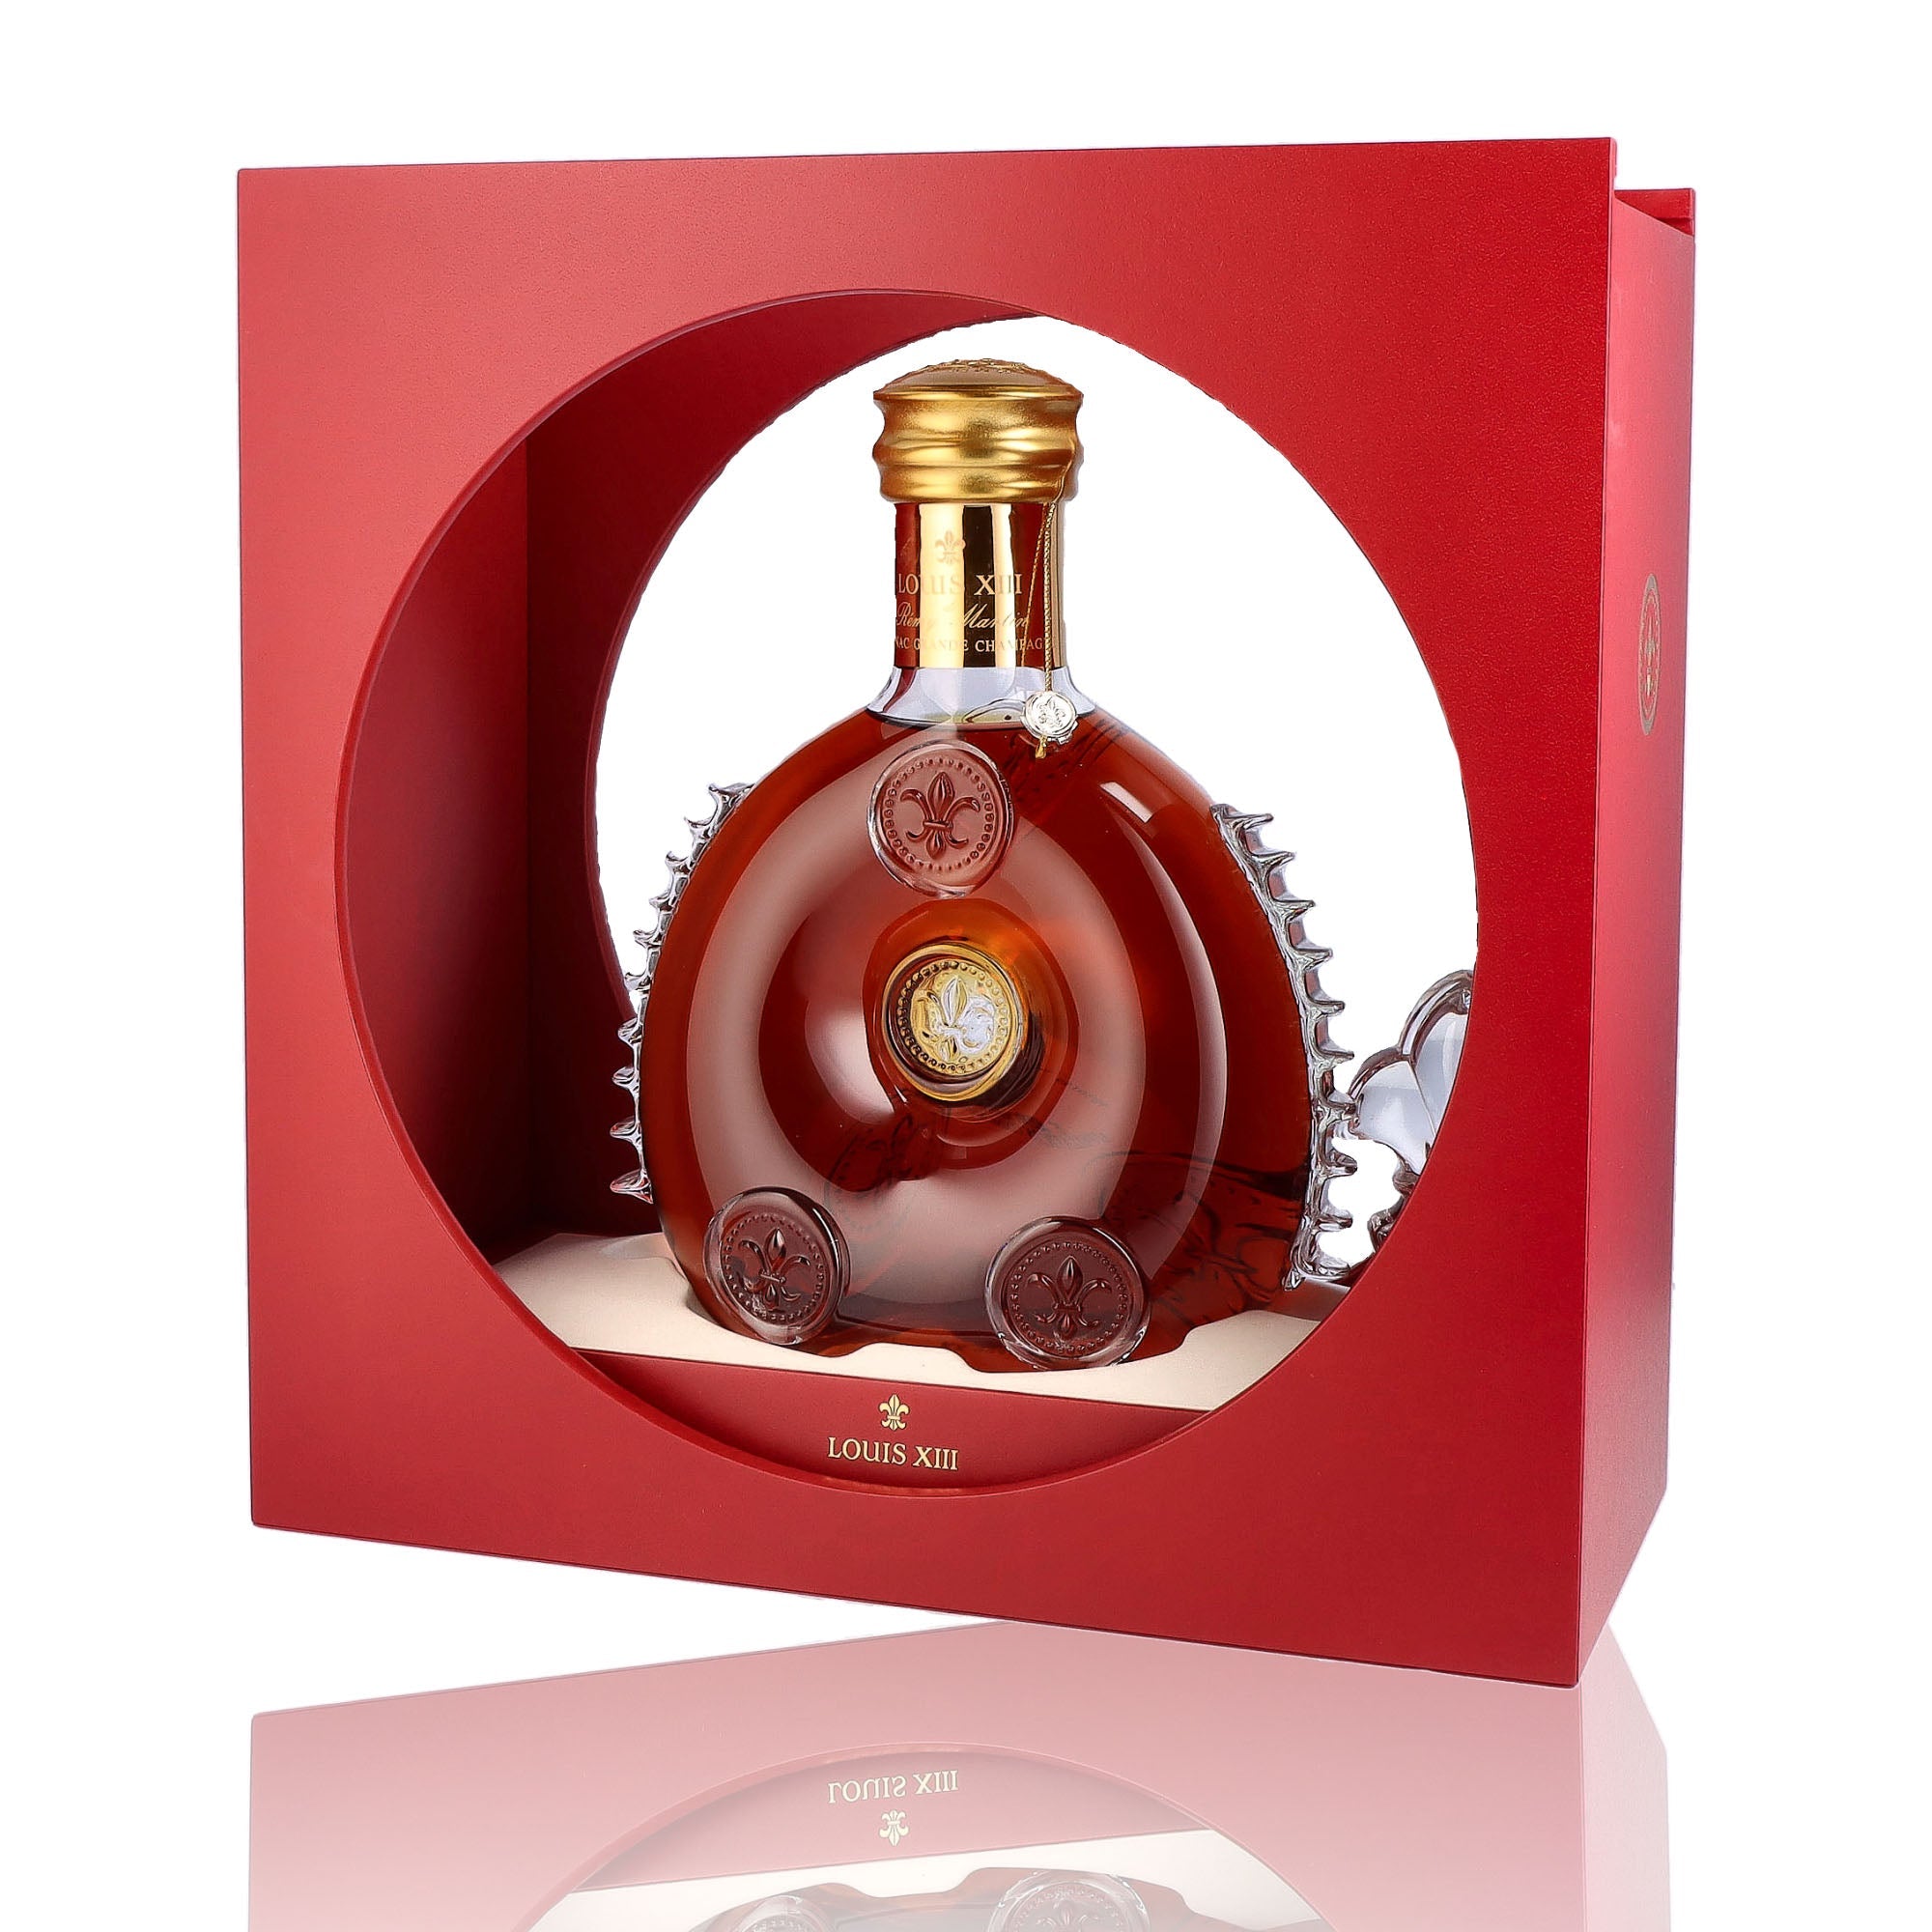 Une bouteille de Cognac, de la marque Remy Martin, nommée Louis XIII.